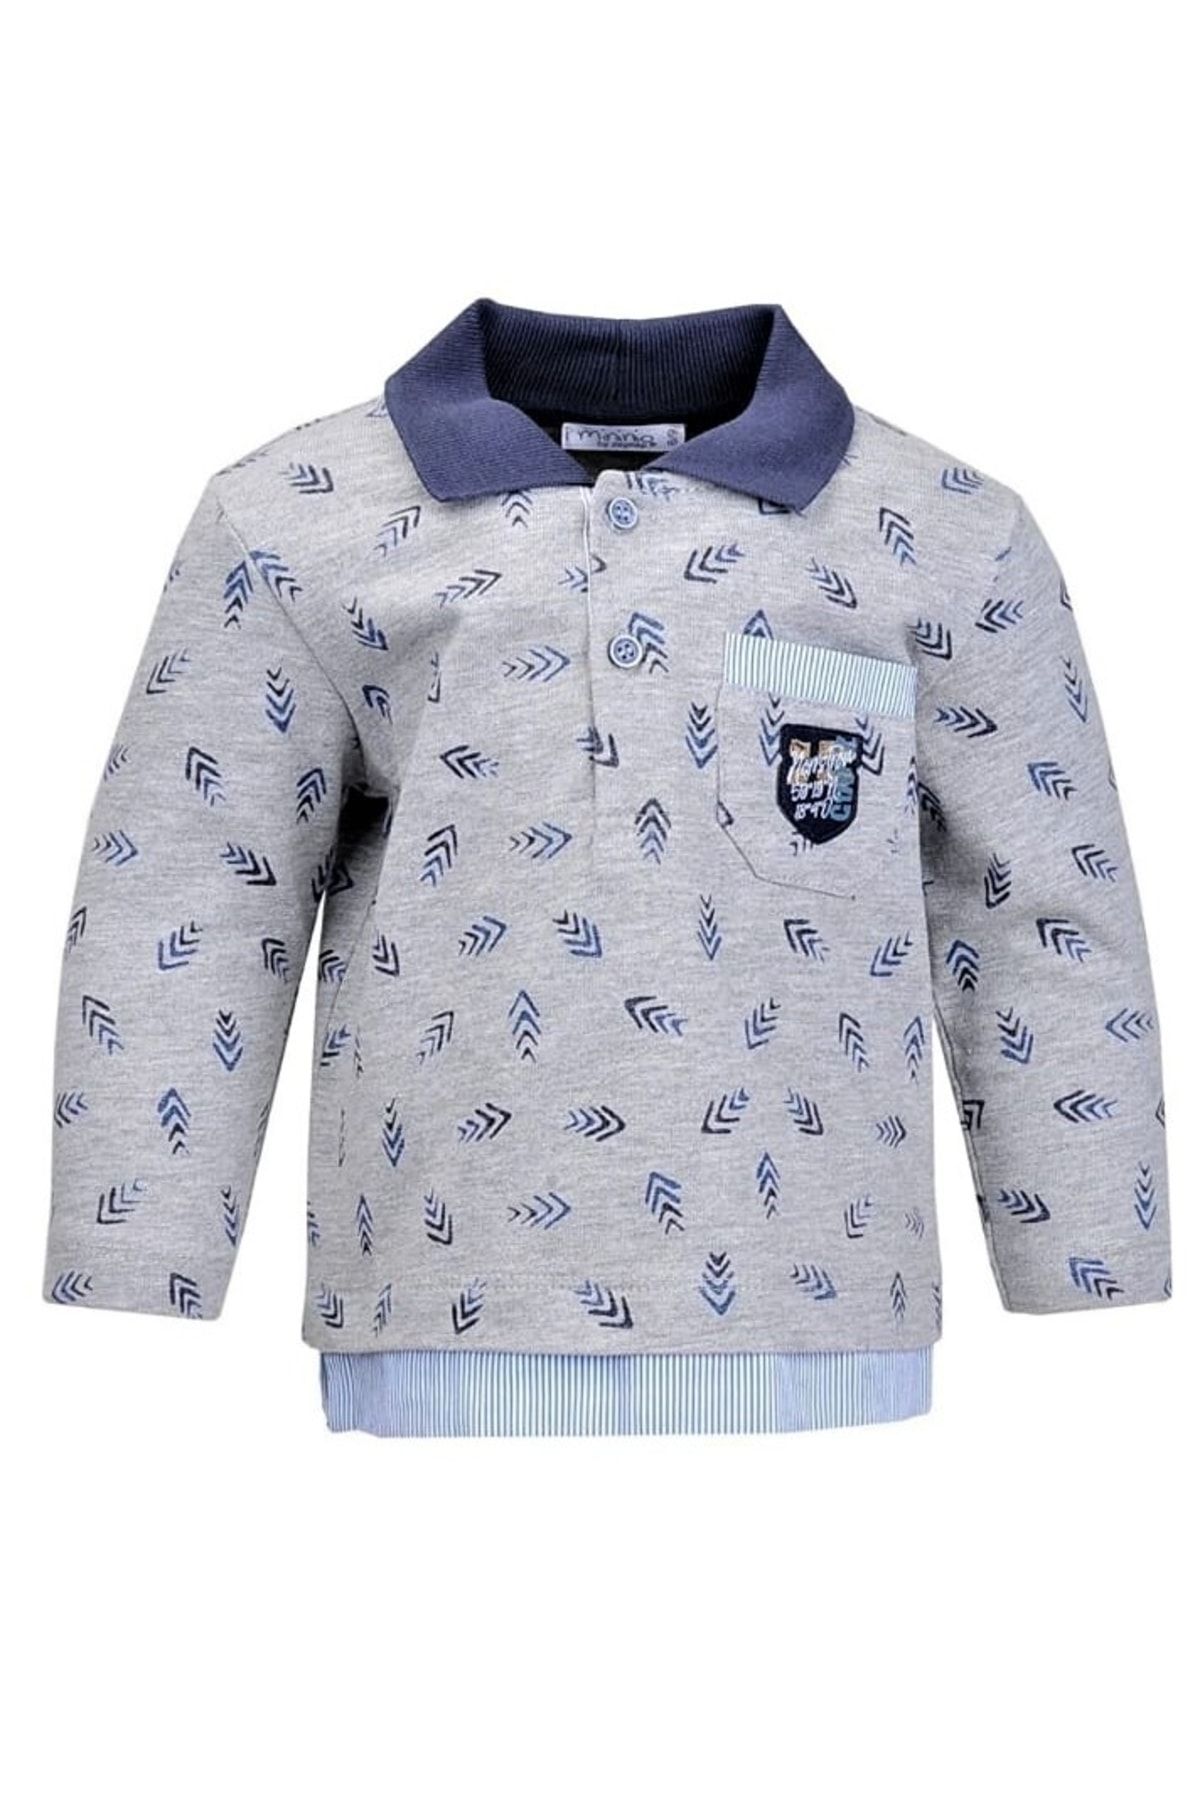 Zeyland Erkek Çocuk Kışlık Grimelaj Renk Gömlek Üstü Sweat Görünümlü Sweatshirt